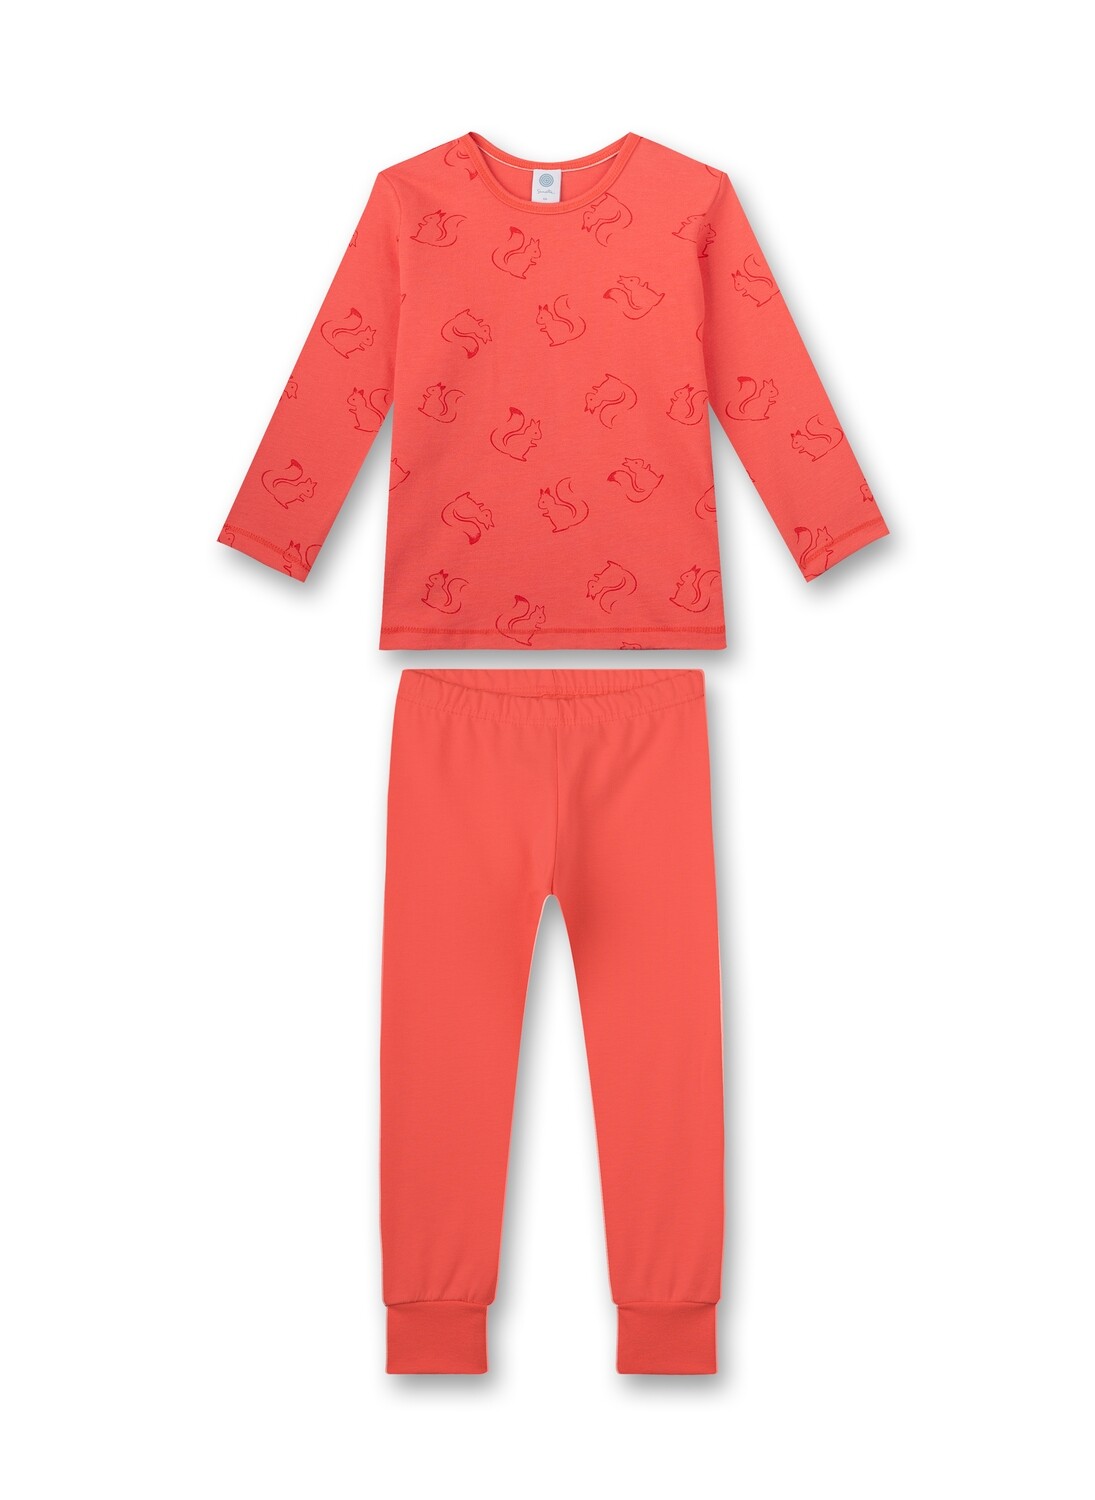 Sanetta pyjama meisjes: Eekhoorn motief, 100% katoen